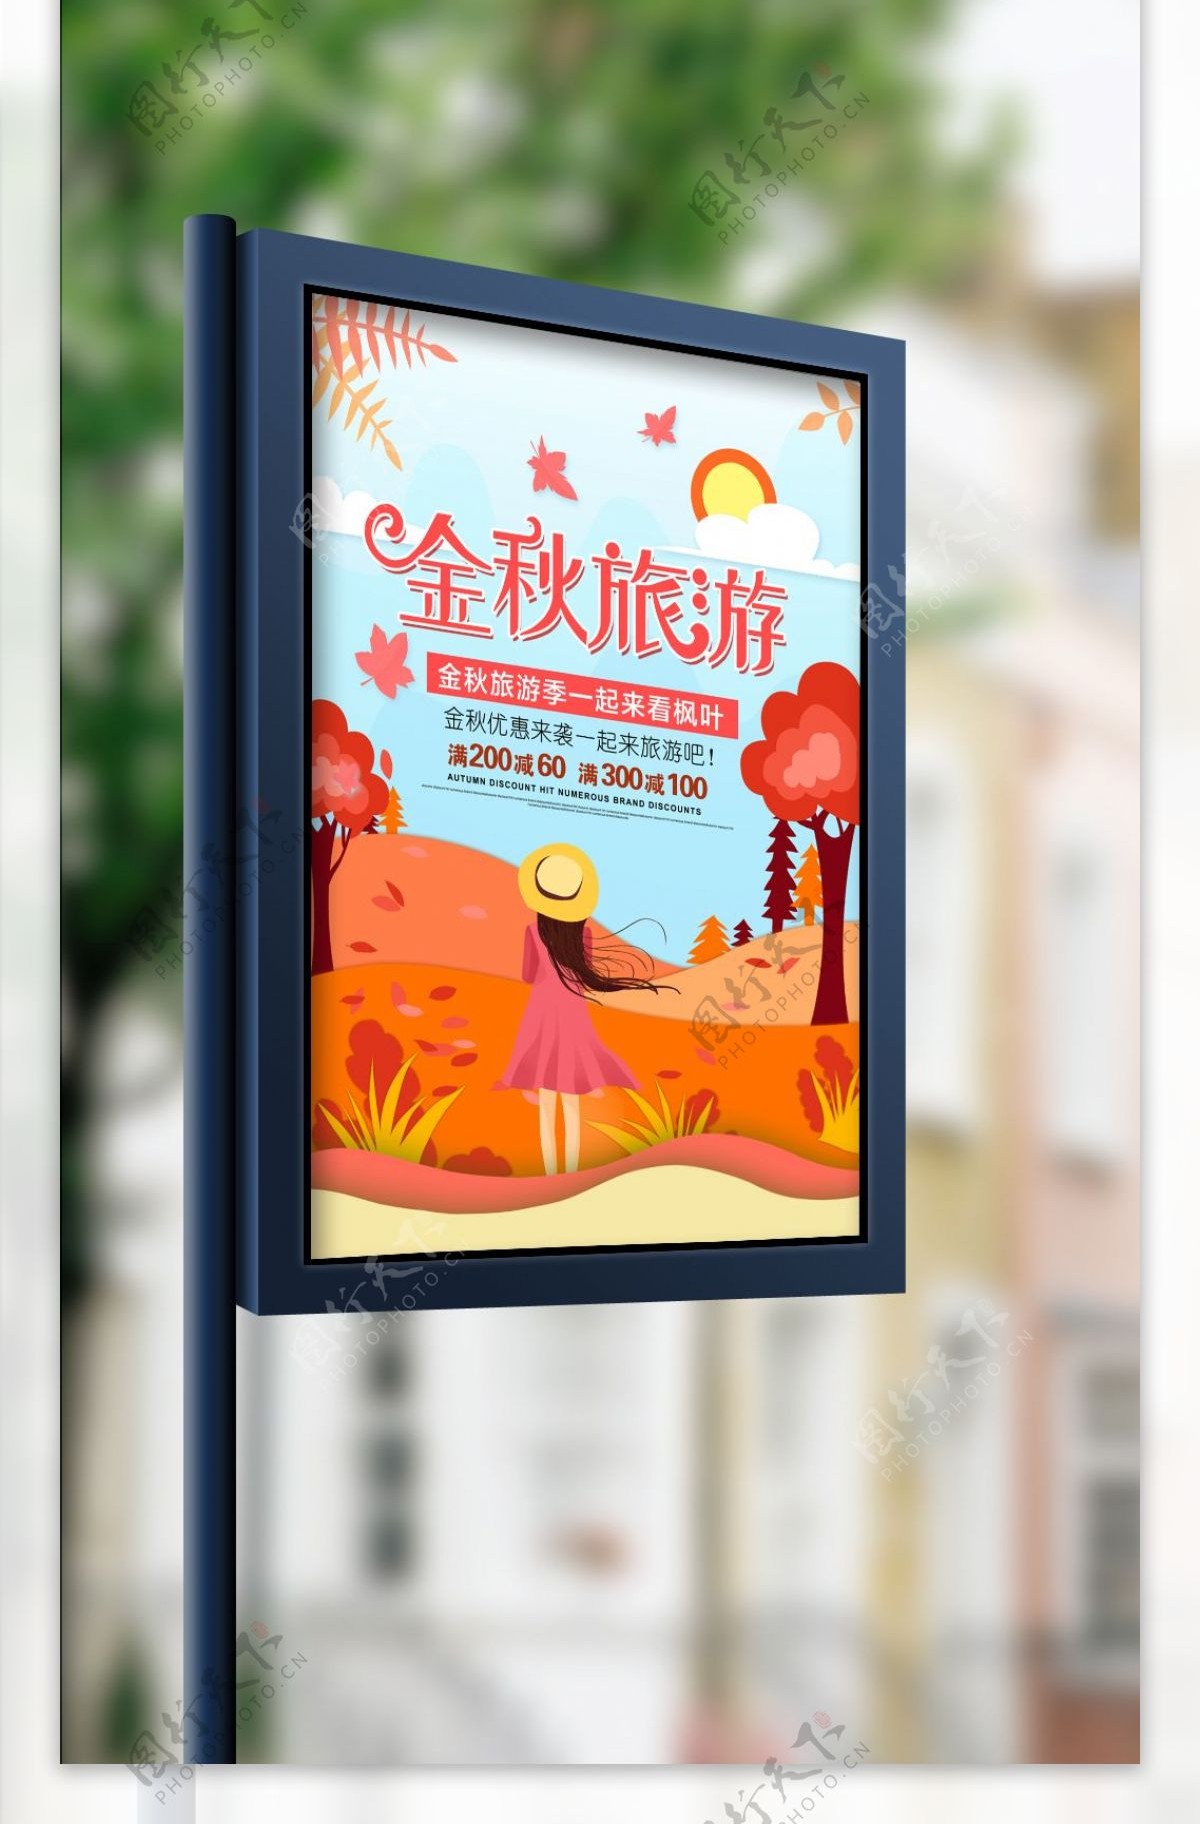 原创简约时尚金秋旅游宣传海报设计